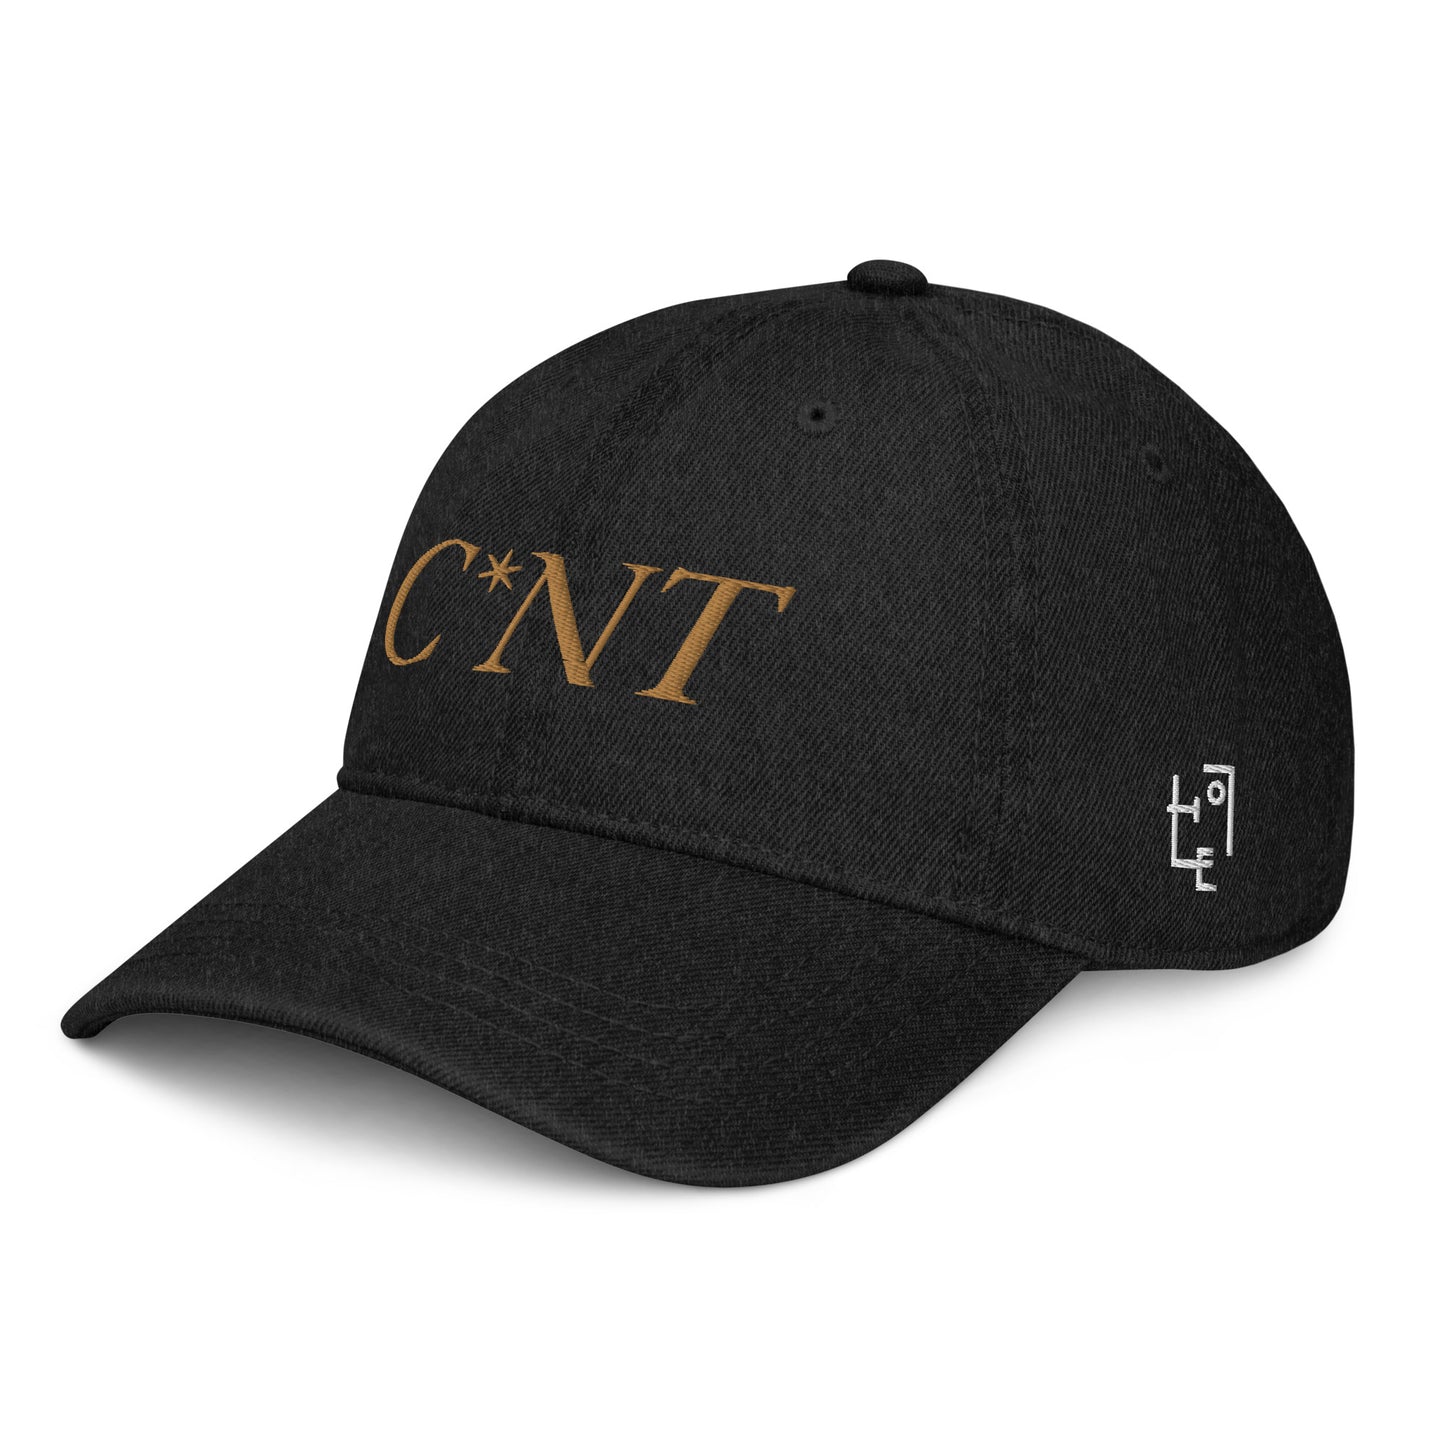 C*NT CAP